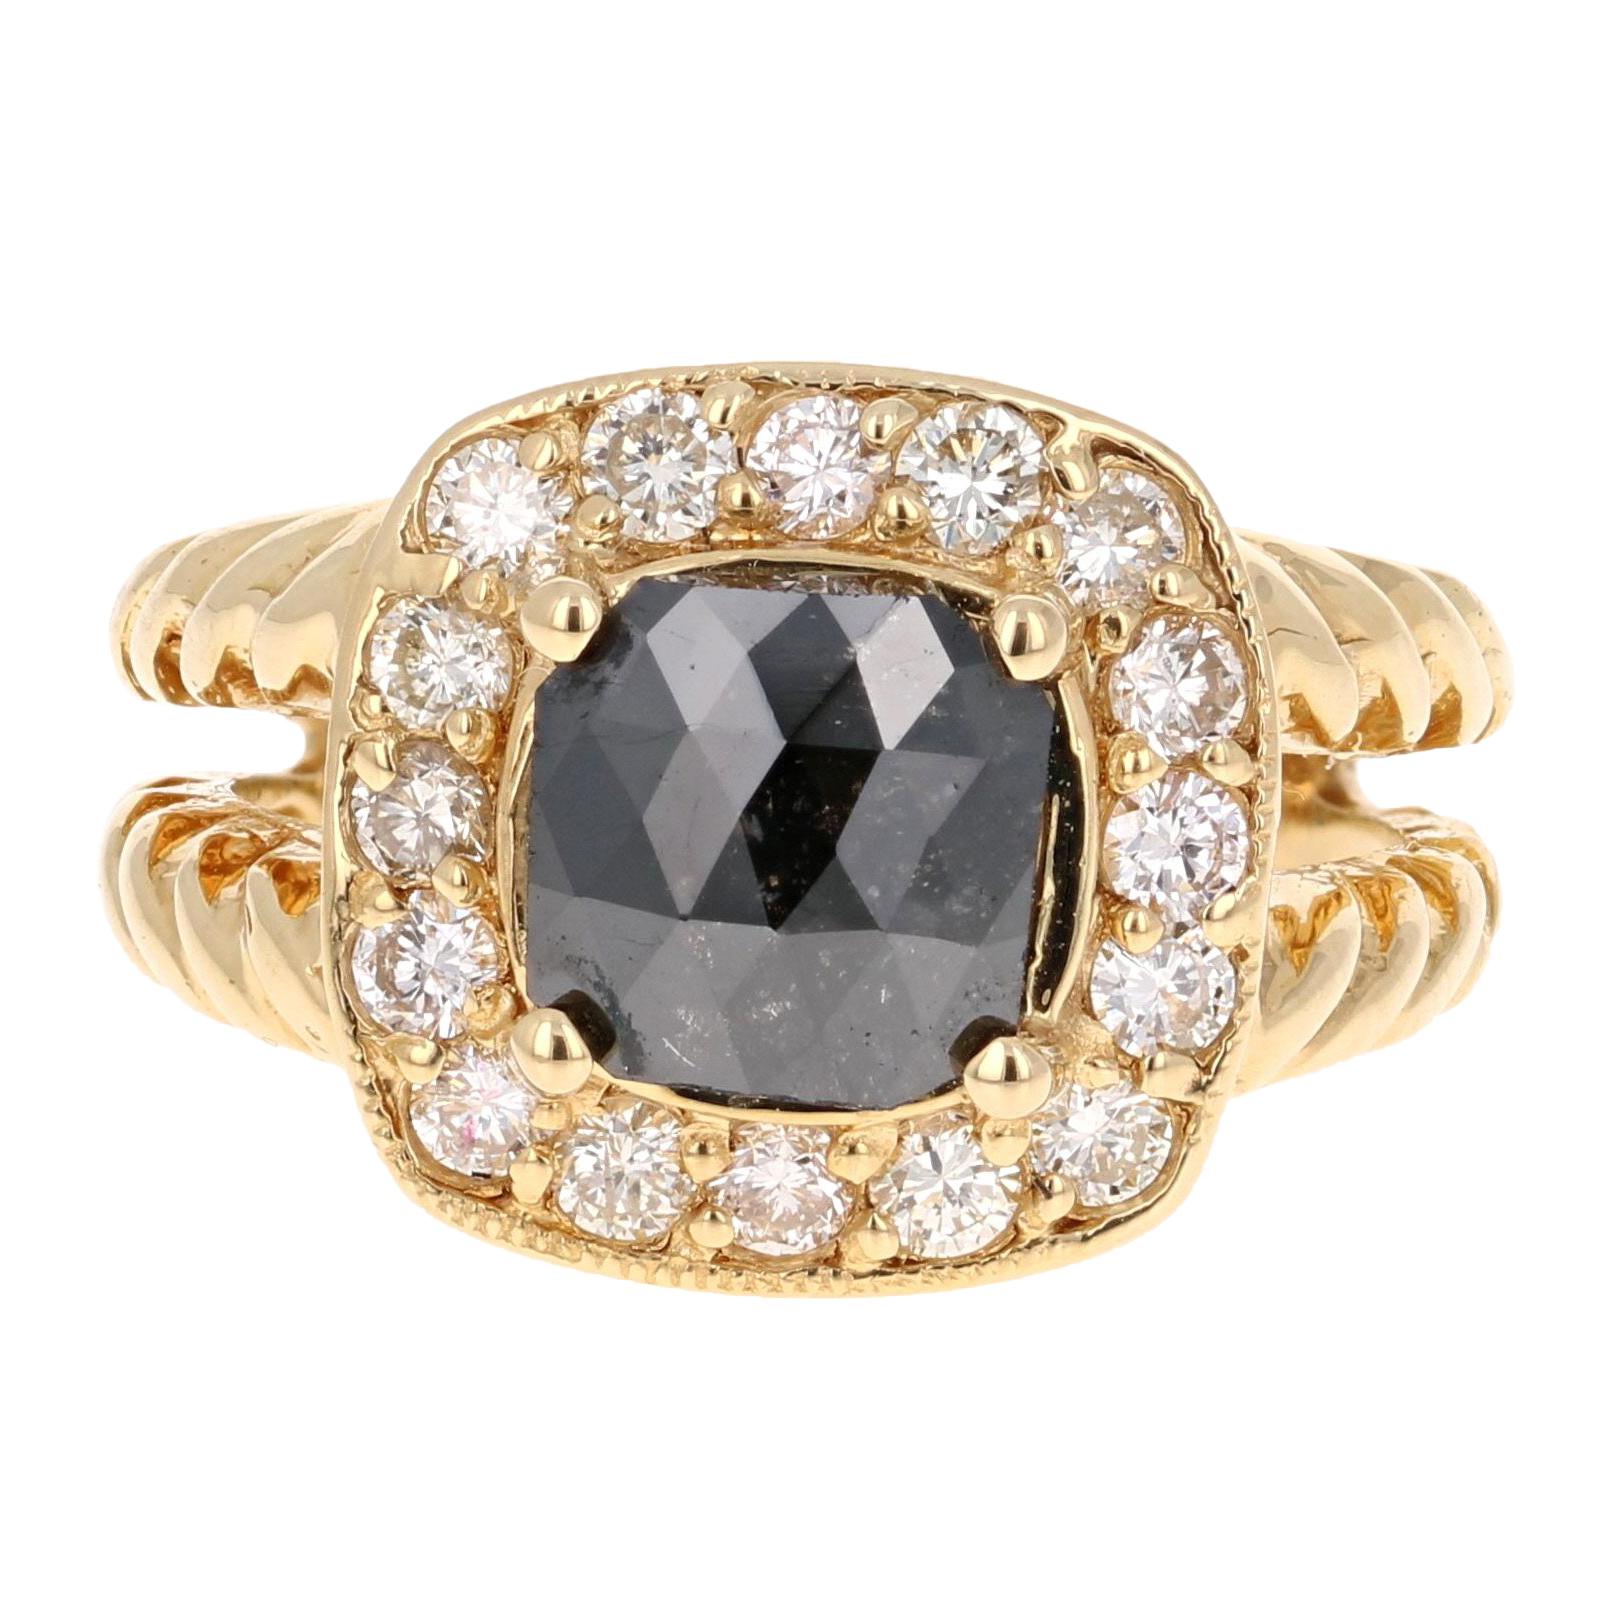 2.11 Carat Black Diamond 18 Karat Yellow Gold Ring 